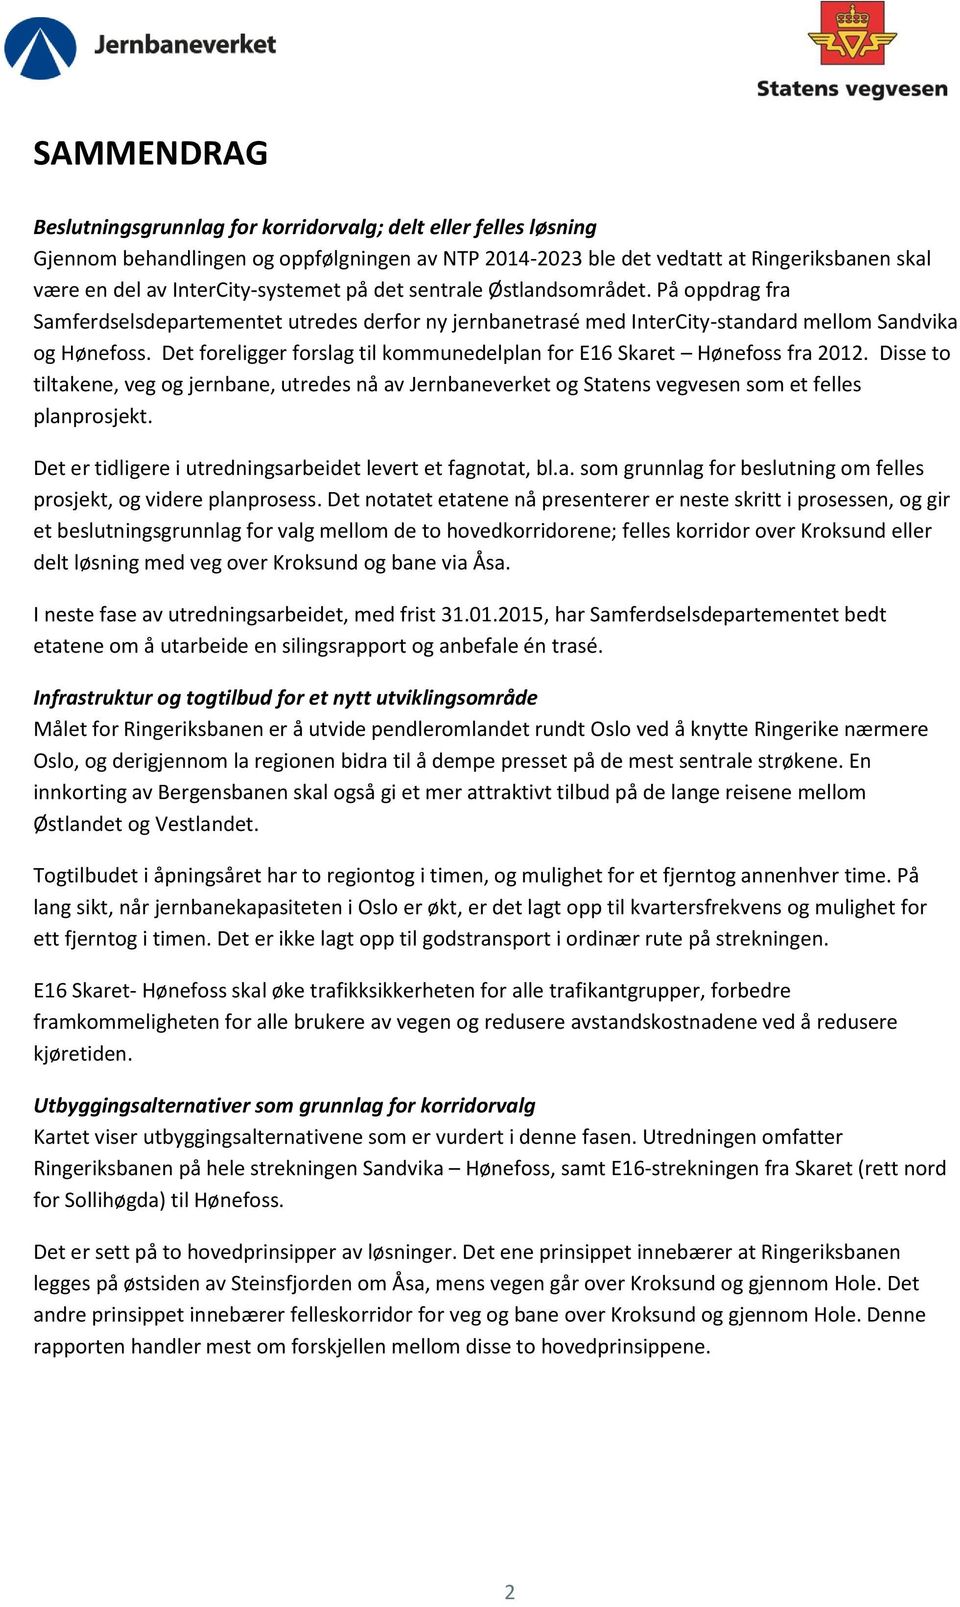 Det foreligger forslag til kommunedelplan for E16 Skaret Hønefoss fra 2012. Disse to tiltakene, veg og jernbane, utredes nå av Jernbaneverket og Statens vegvesen som et felles planprosjekt.